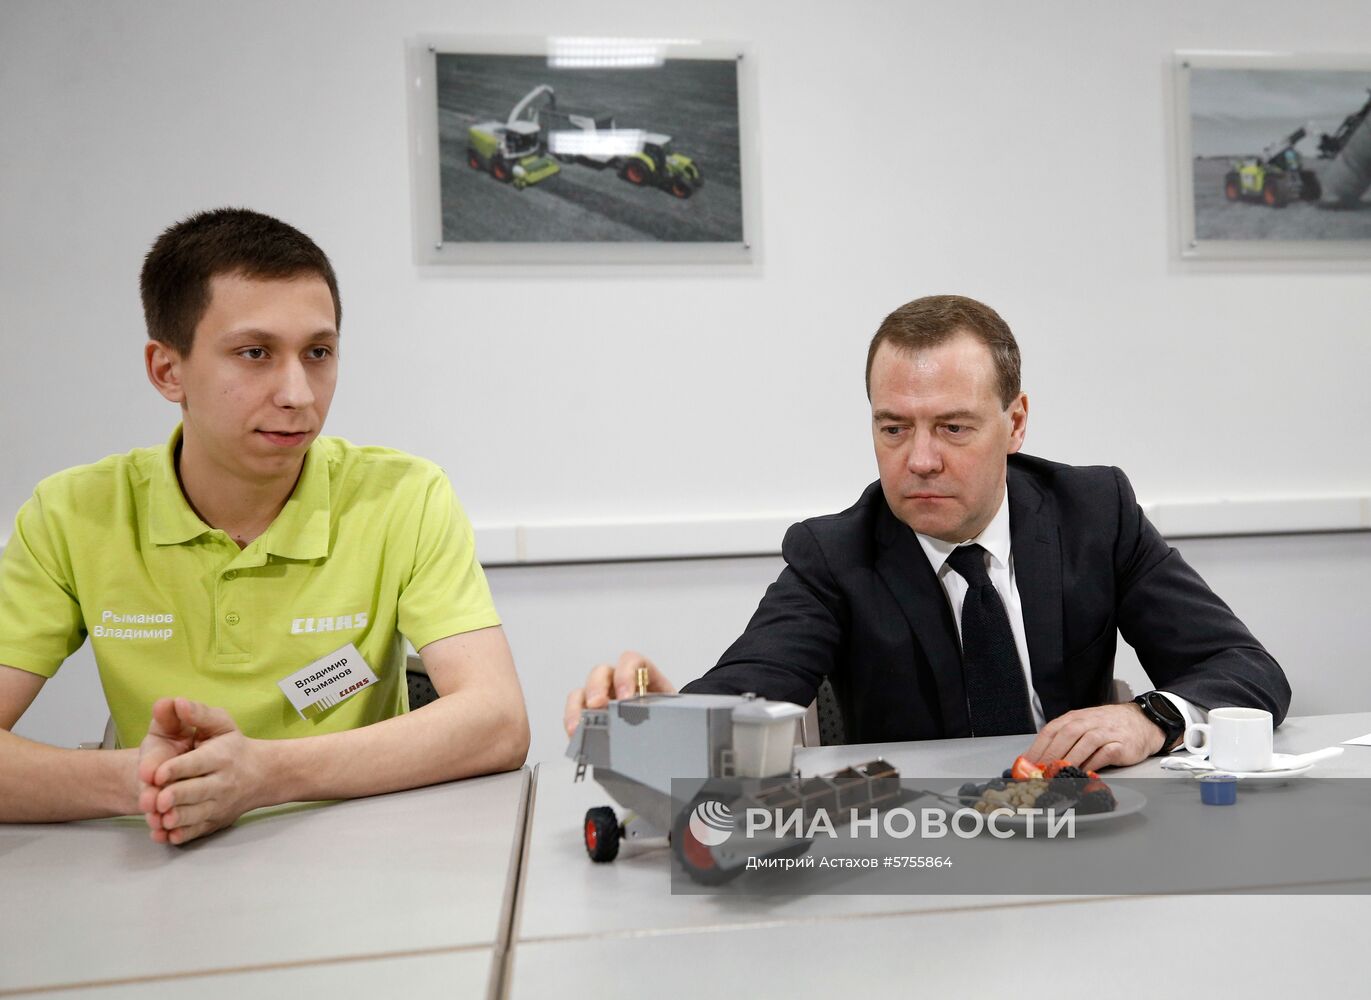 Рабочая поездка премьер-министра РФ Д. Медведева в Краснодарский край 